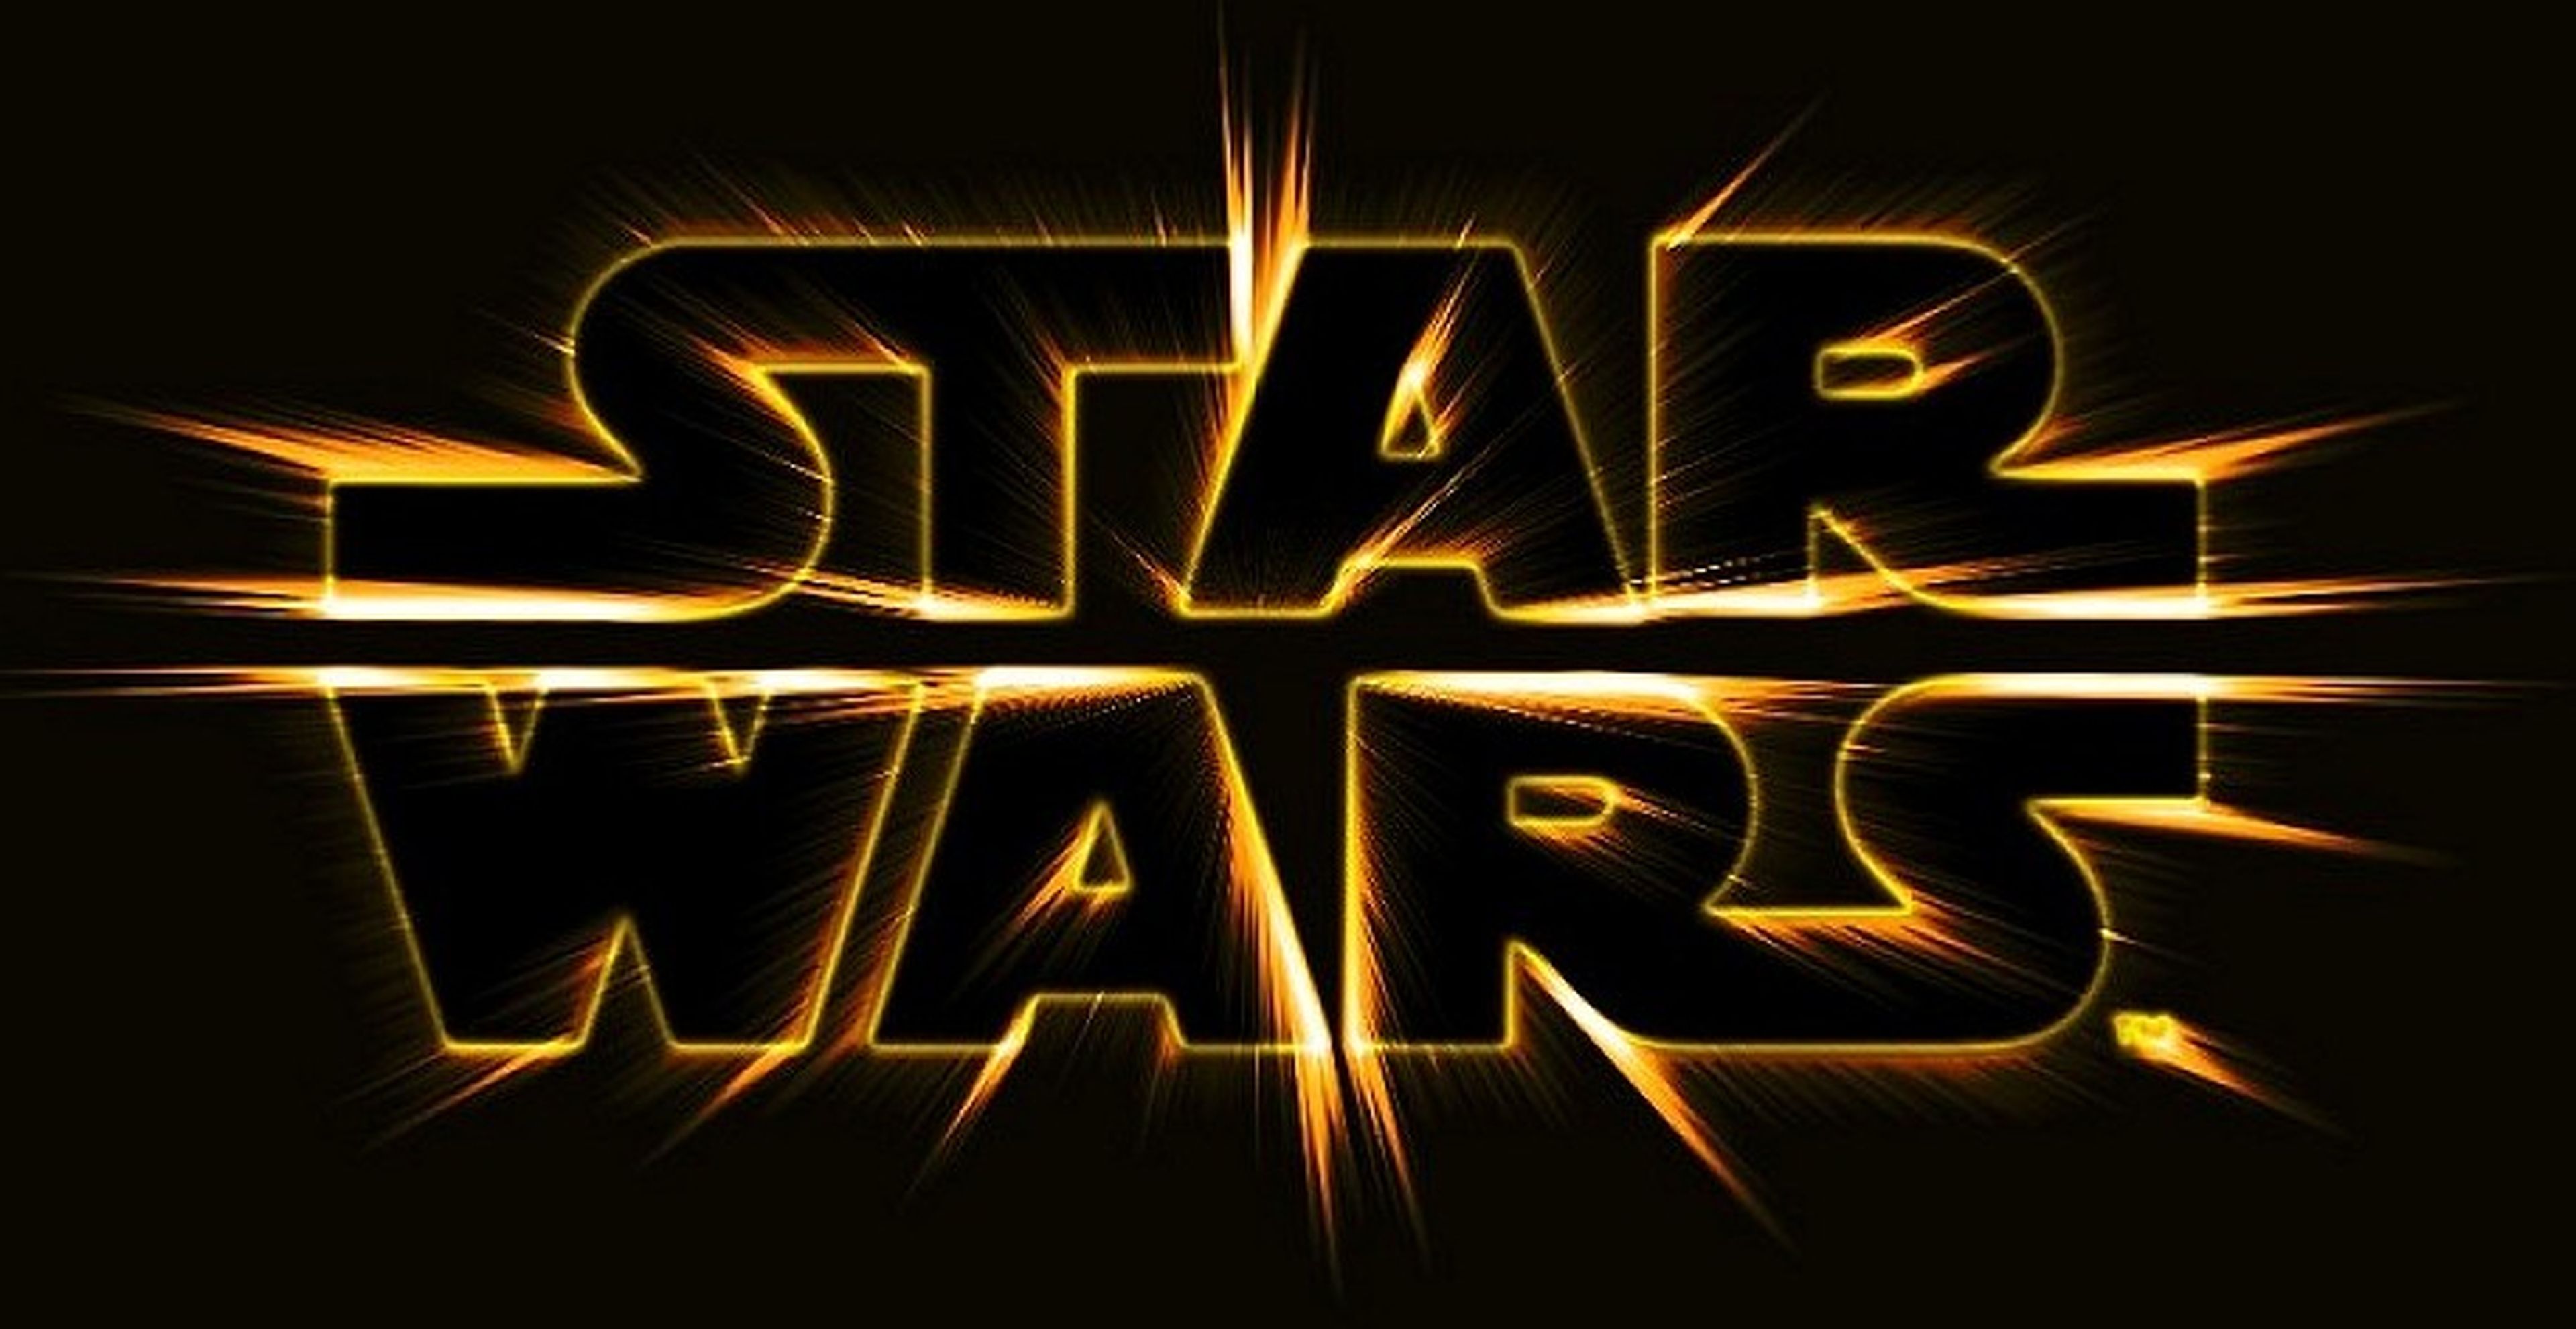 Star Wars Episodio VII confirma su estreno en verano de 2015